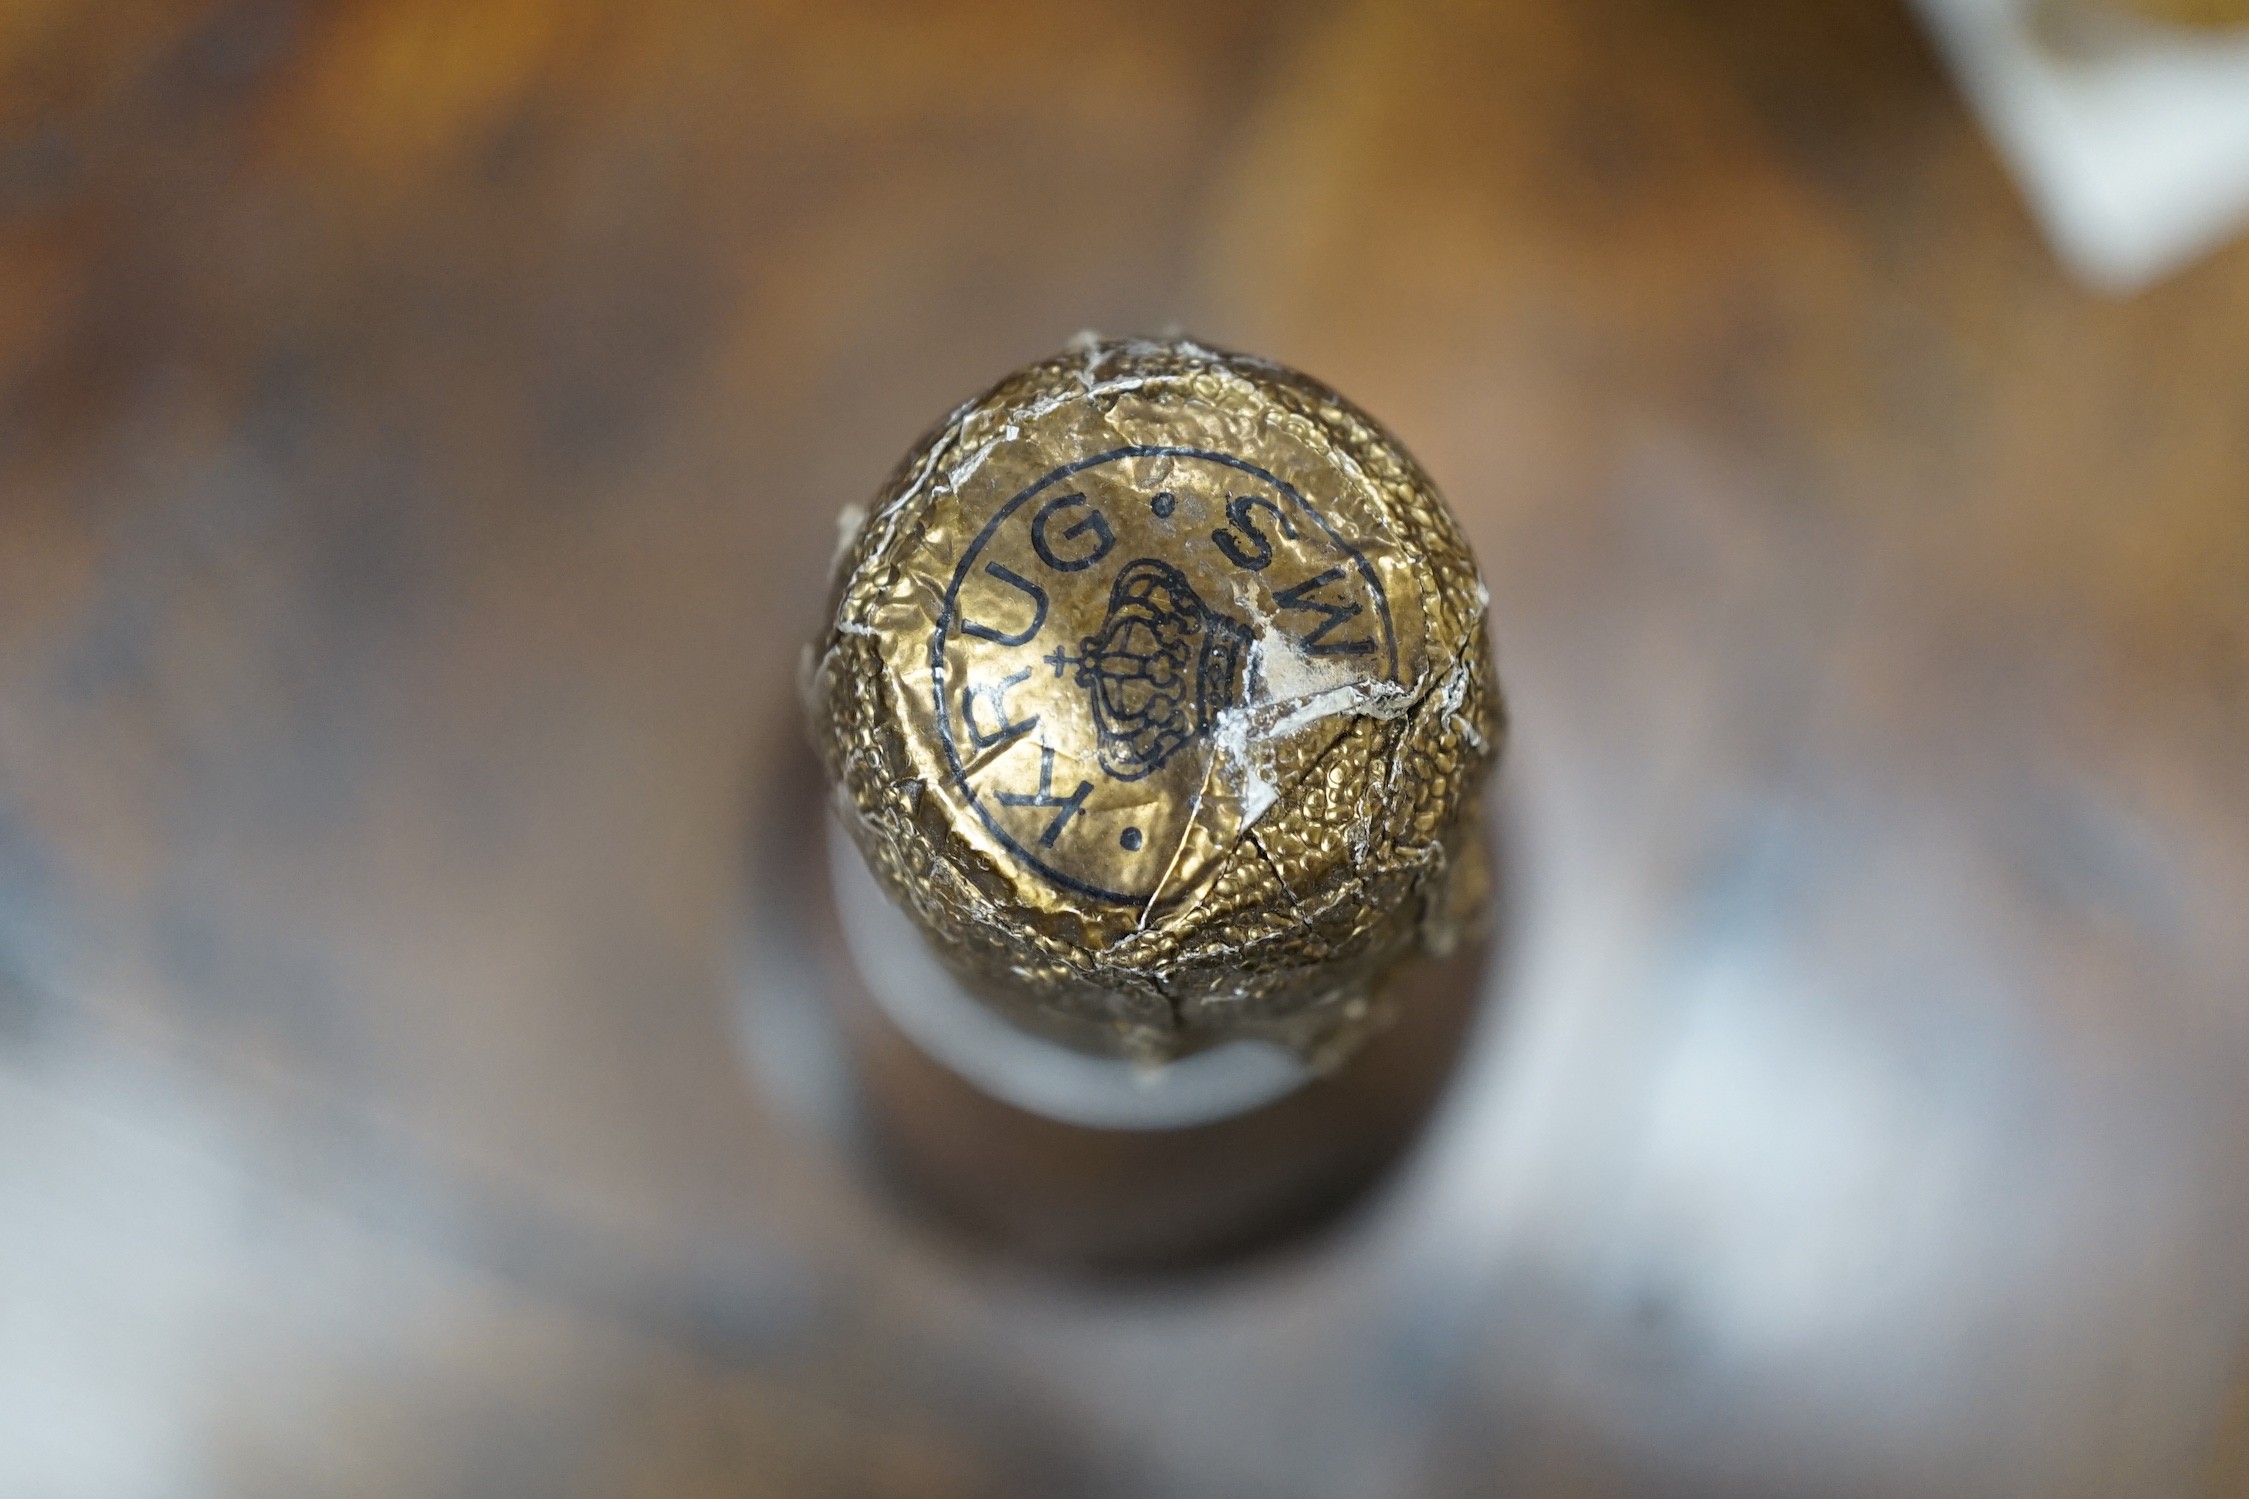 A 1973 bottle of Vintage Krug Champagne of Reims